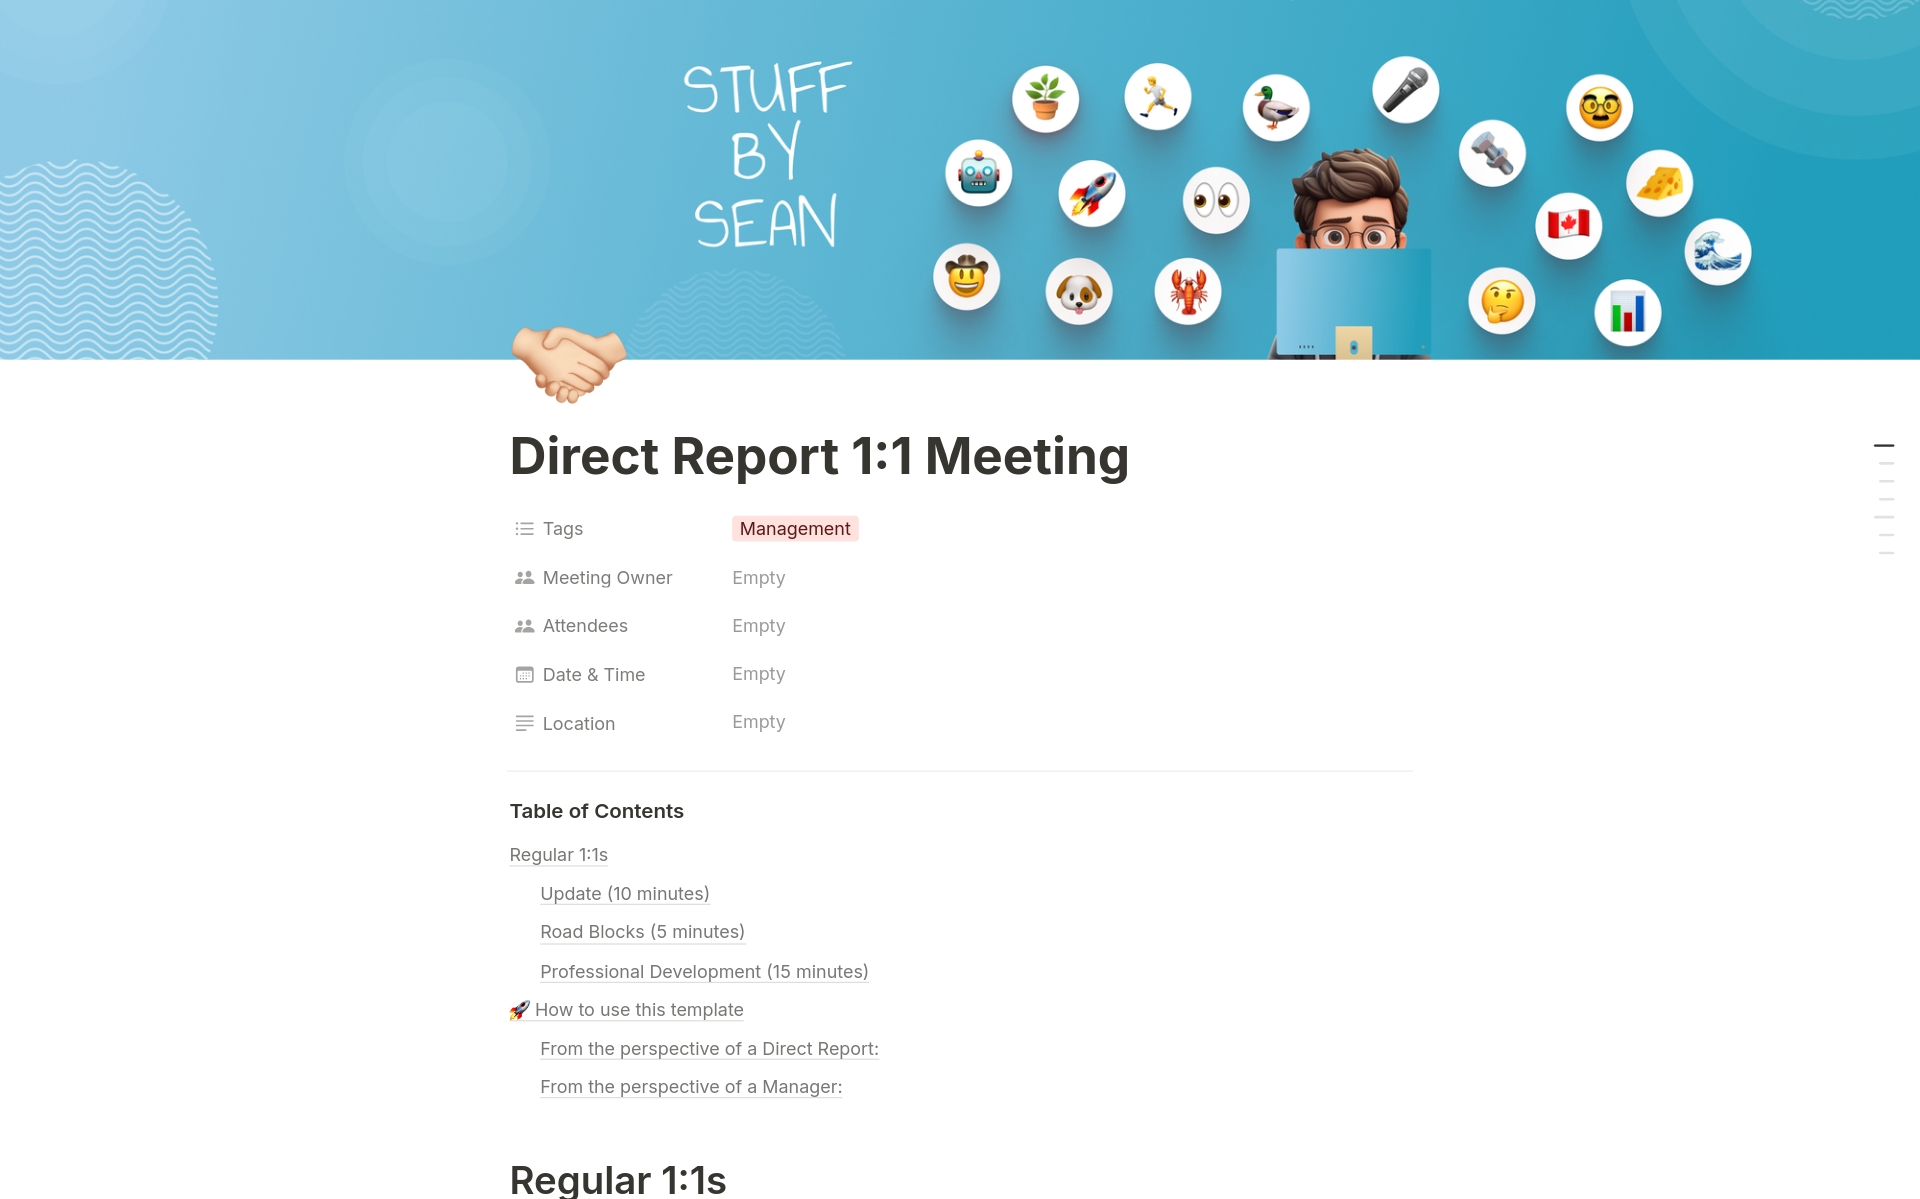 Uma prévia do modelo para Direct Report 1:1 Meeting